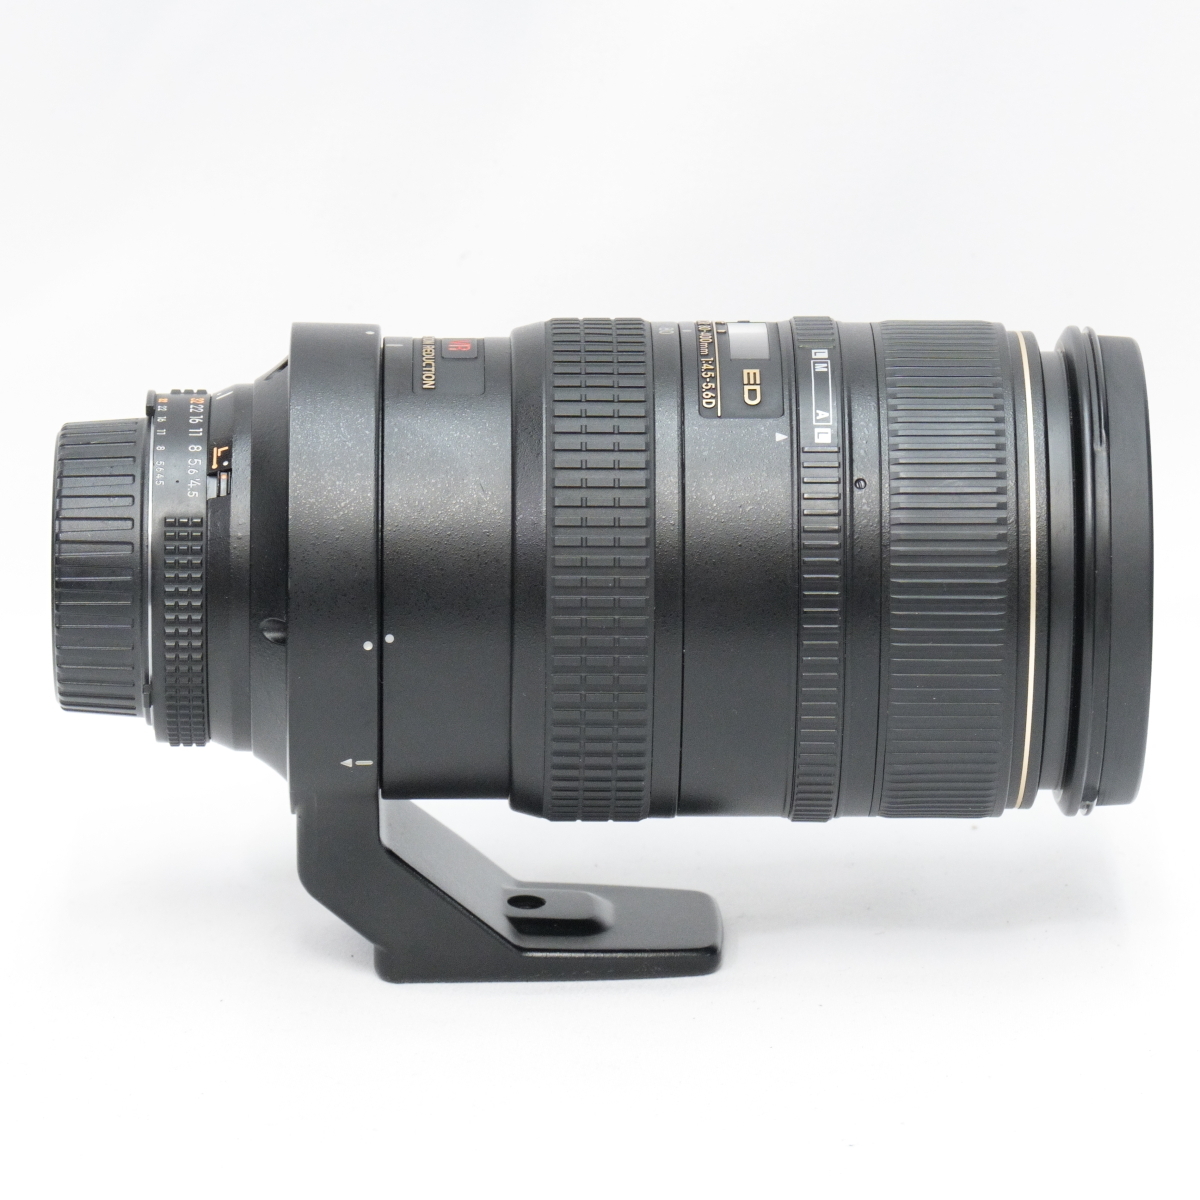 AF VR NIKKOR 80-400mm 1:4.5-5.6 D ED 【動作確認済み】 レンズケース 三脚台座付属 Nikon ニコンの画像6